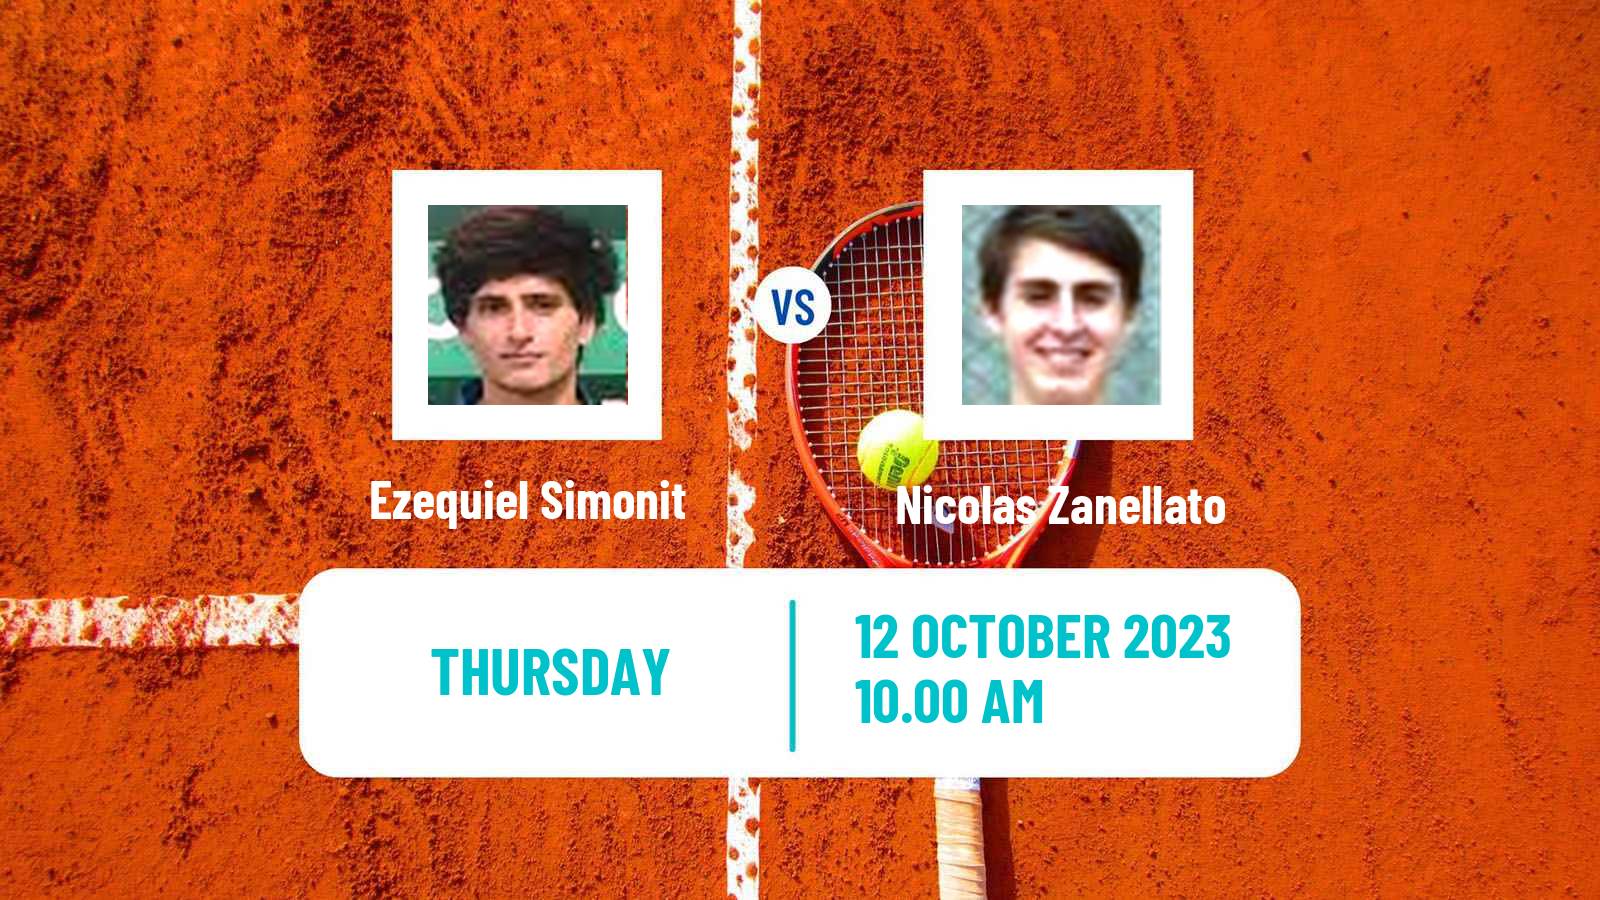 Tennis ITF M25 Lajeado Men Ezequiel Simonit - Nicolas Zanellato